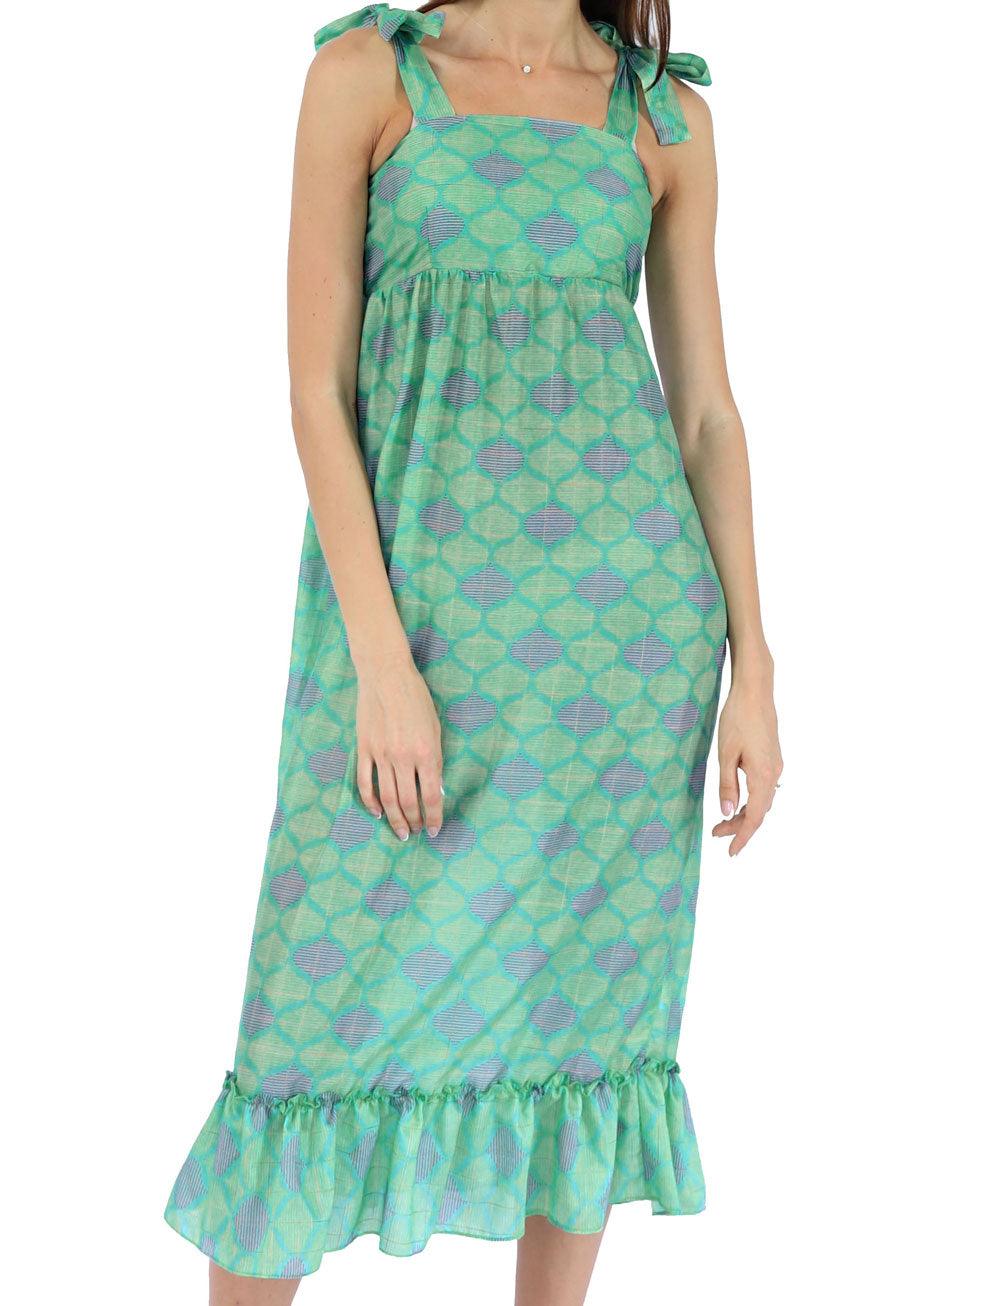 SHOULDER BOW DRESS IN GREEN IKAT DESIGN - Woman - Acqua Bonita